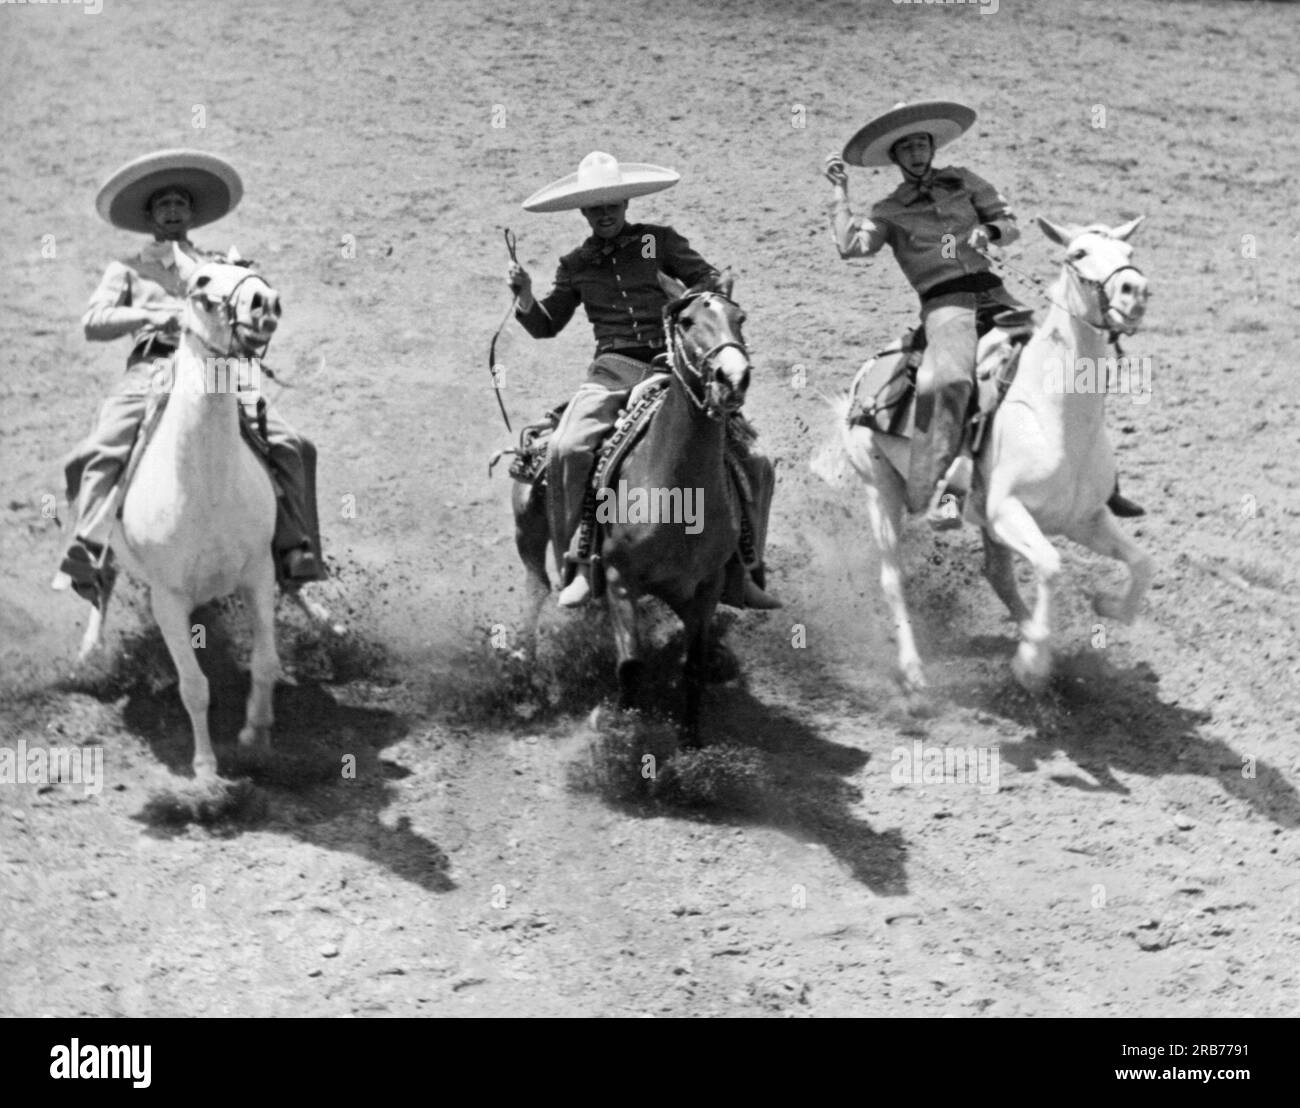 Mexique, 1951 Charros en compétition dans le court arrêt où leurs montures viennent au galop et puis ils freinent leurs chevaux simultanément. Banque D'Images